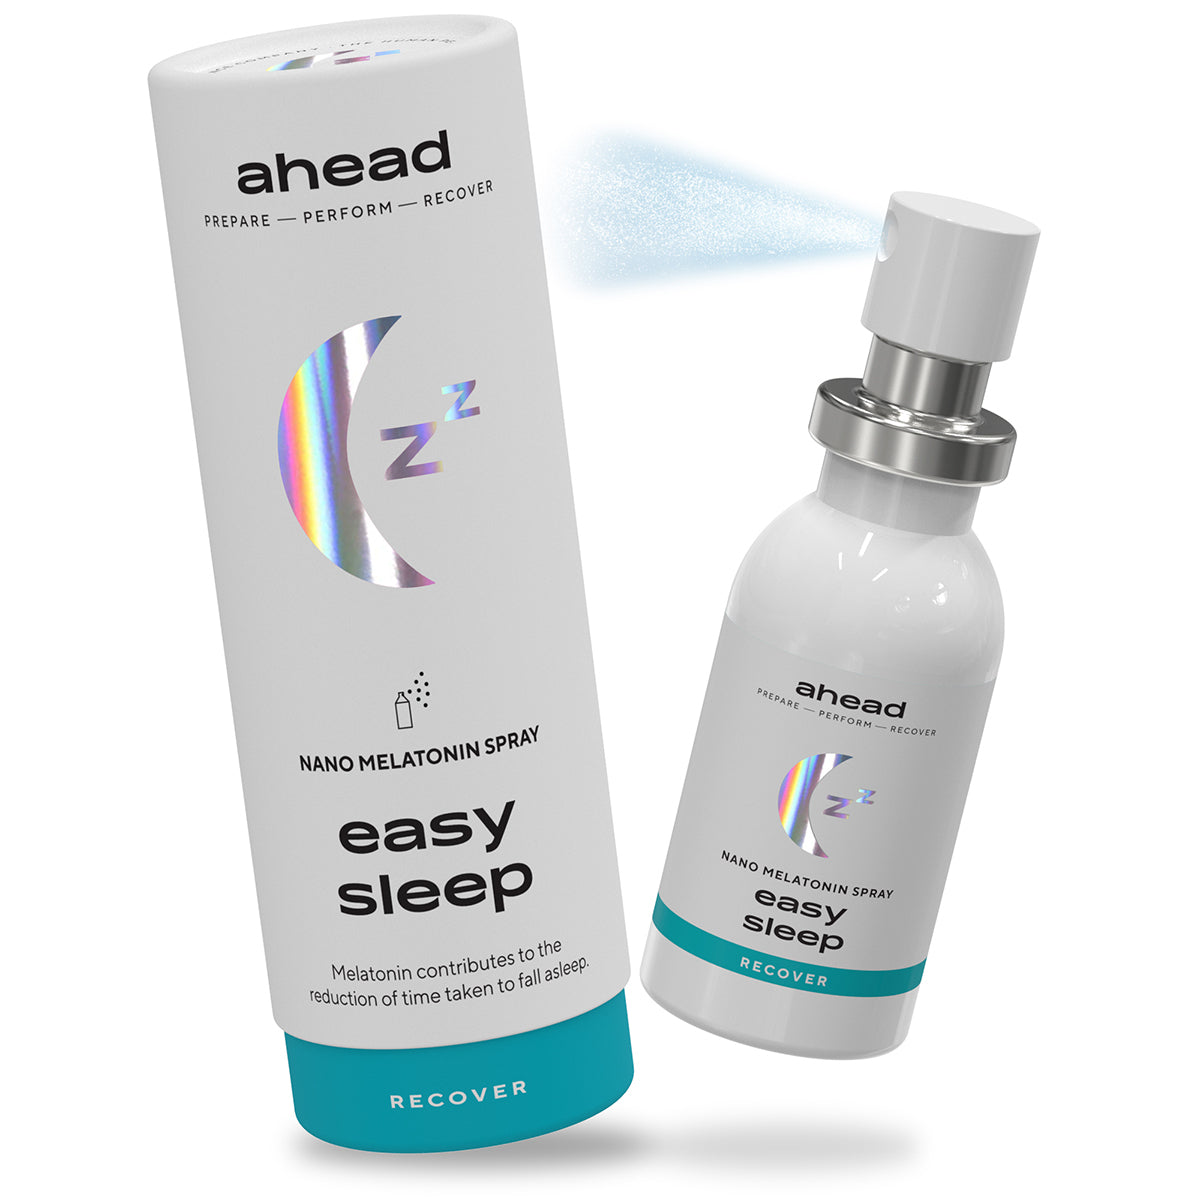 ahead Easy Sleep Aerosol de nano melatonina